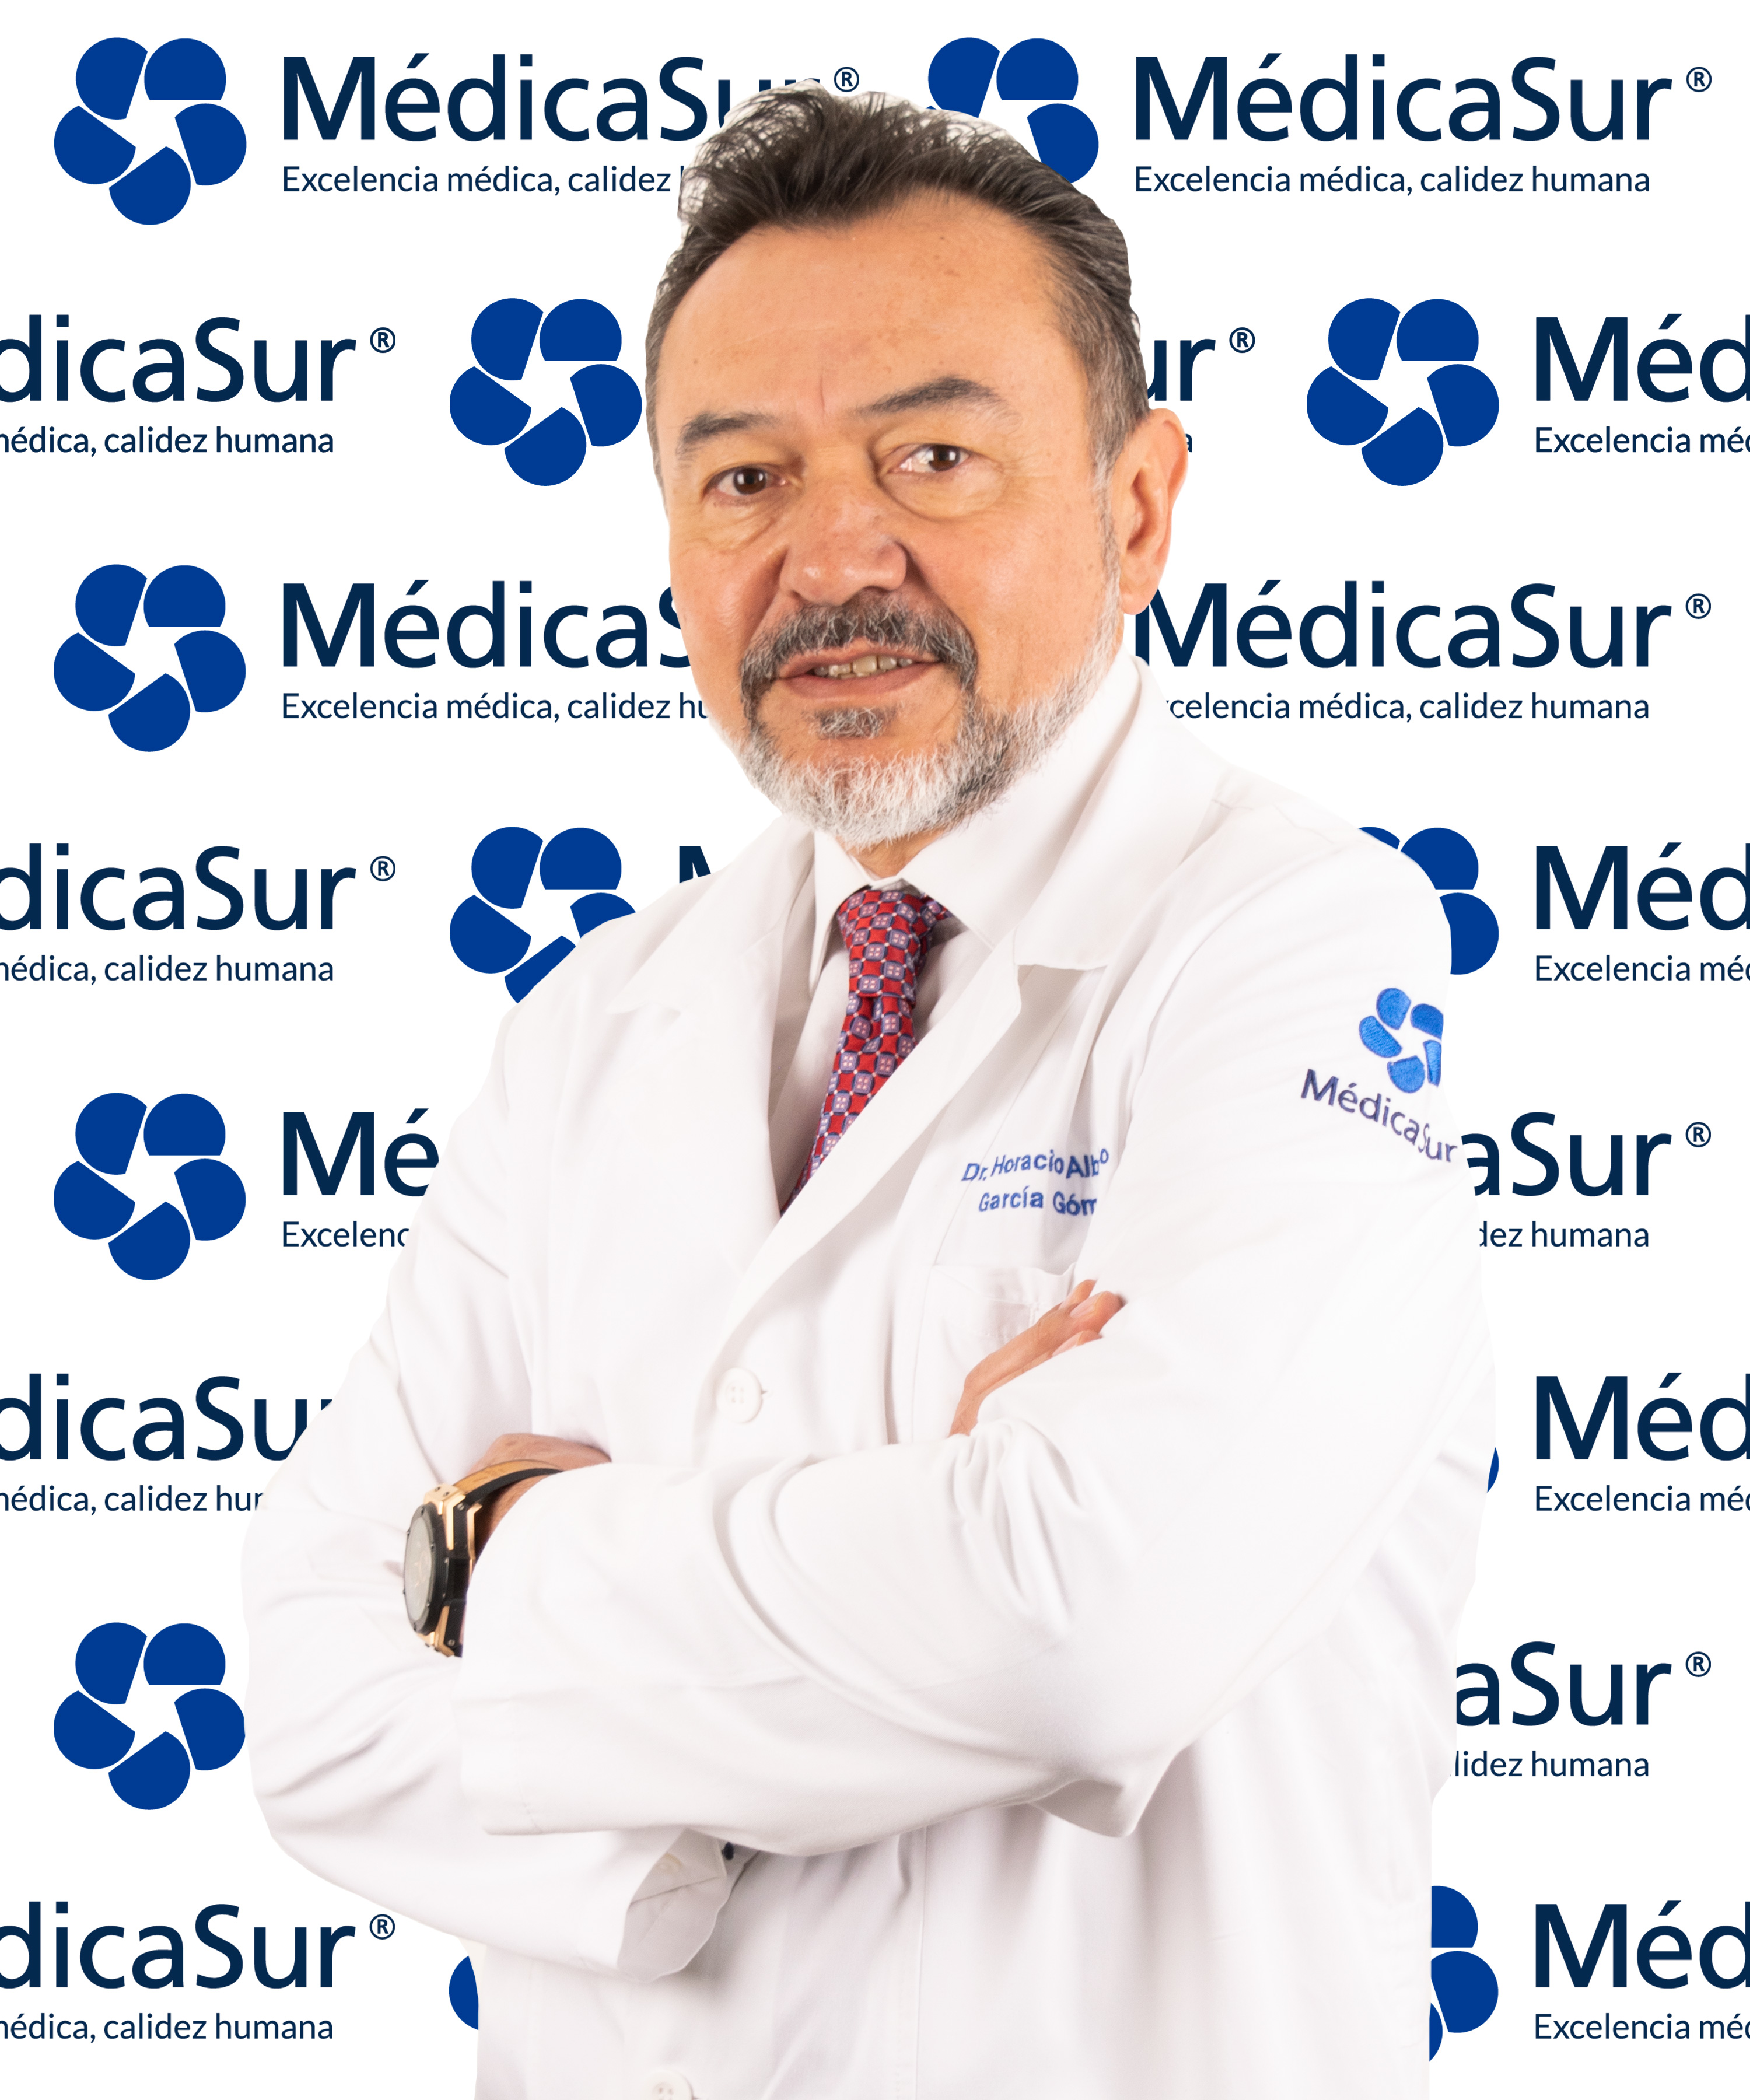 Dr. Horacio Alberto Garcia Gomez